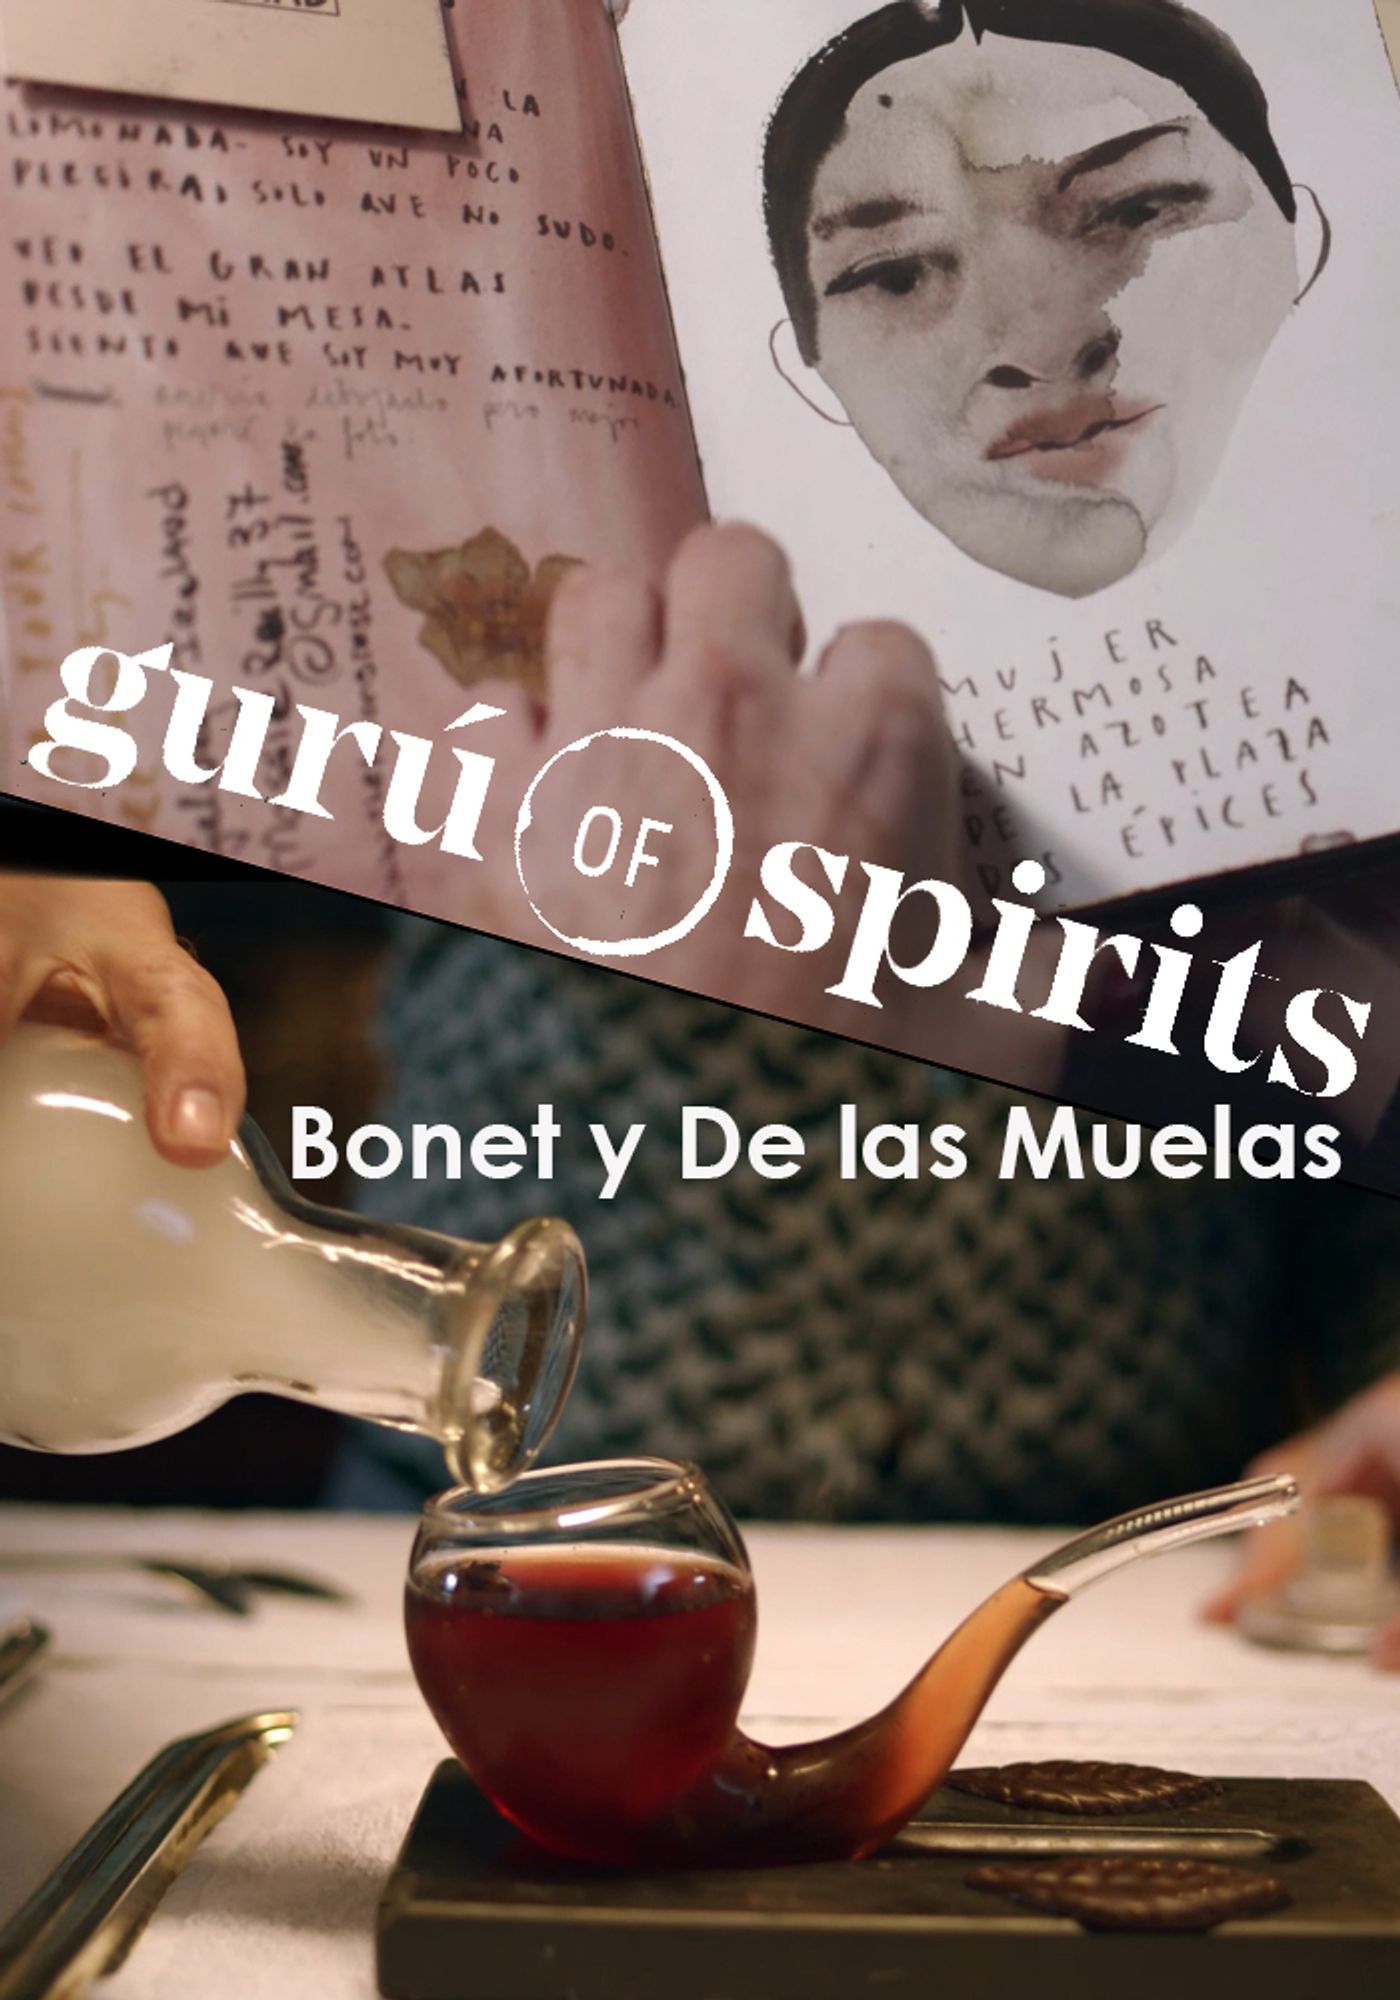 Paula Bonet, Javier de las Muelas y las bebidas espirituosas: Desvelamos qué tienen en común